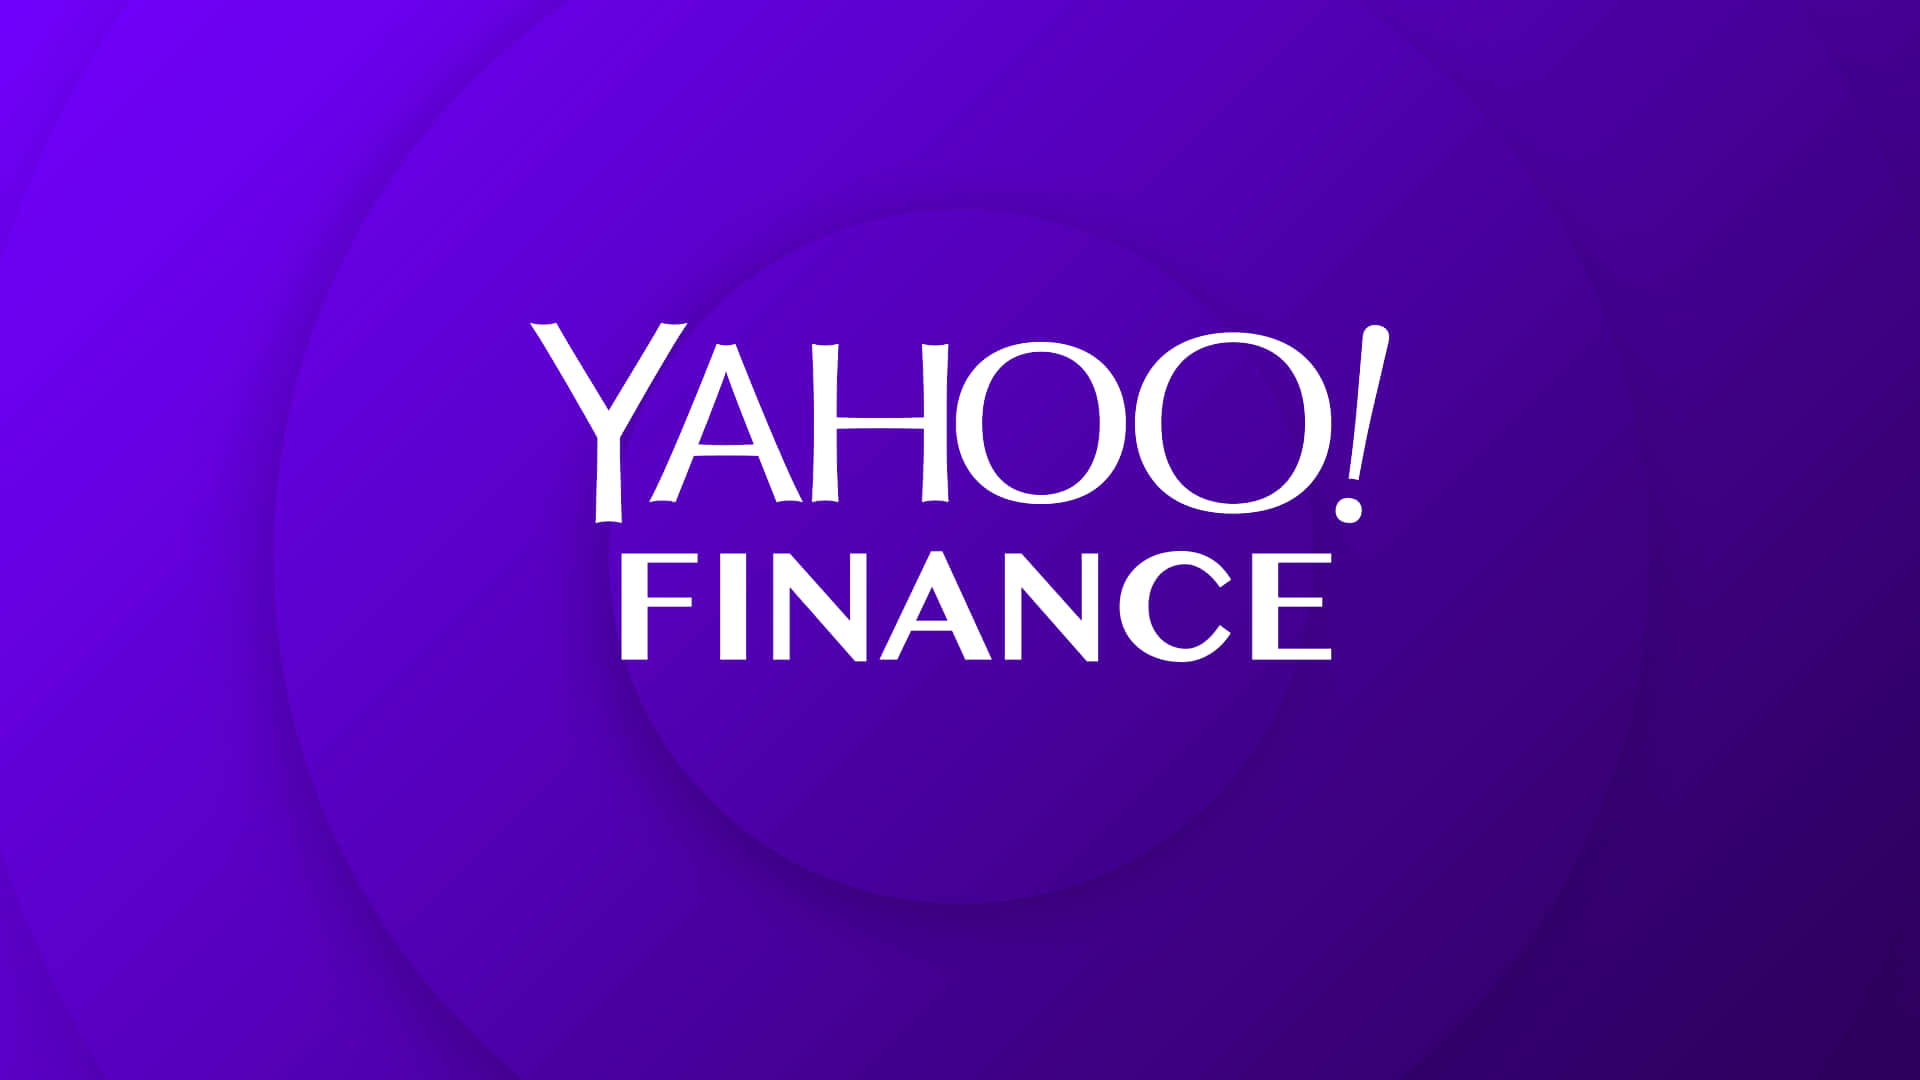 Logode Yahoo Finance Sobre Un Fondo Morado